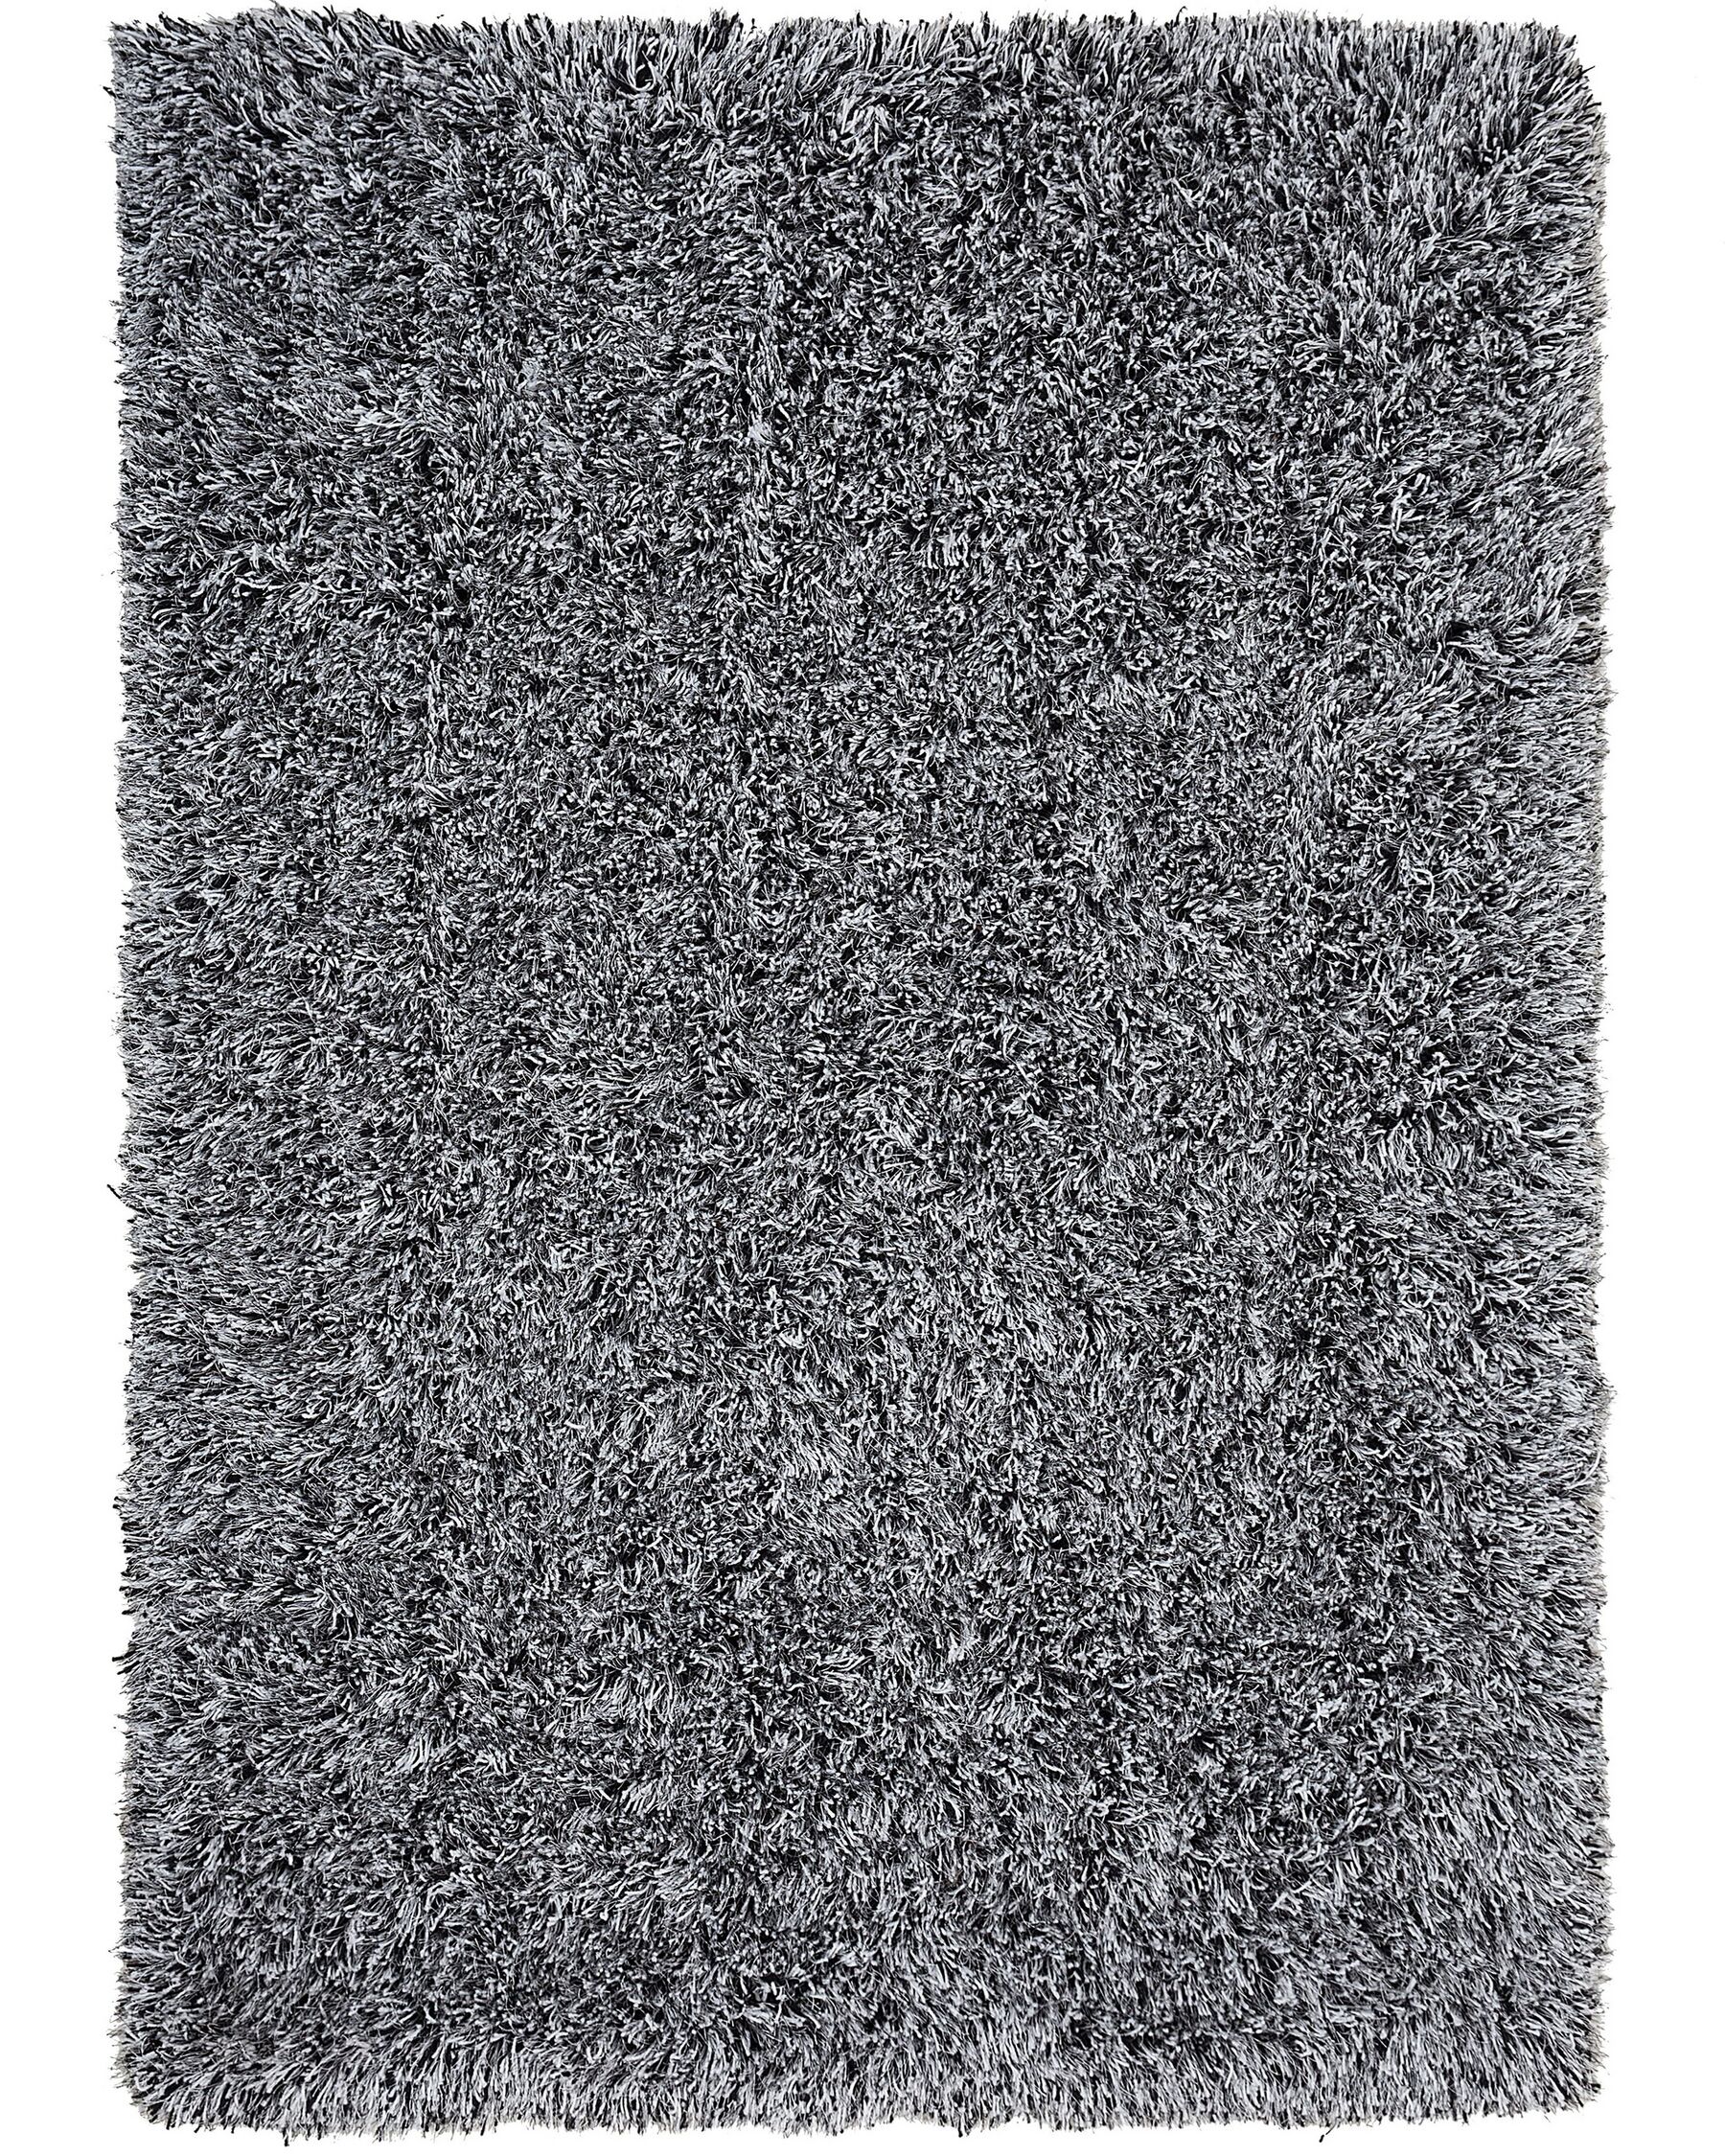 Tapis shaggy noir et blanc 200 x 300 cm CIDE_746817